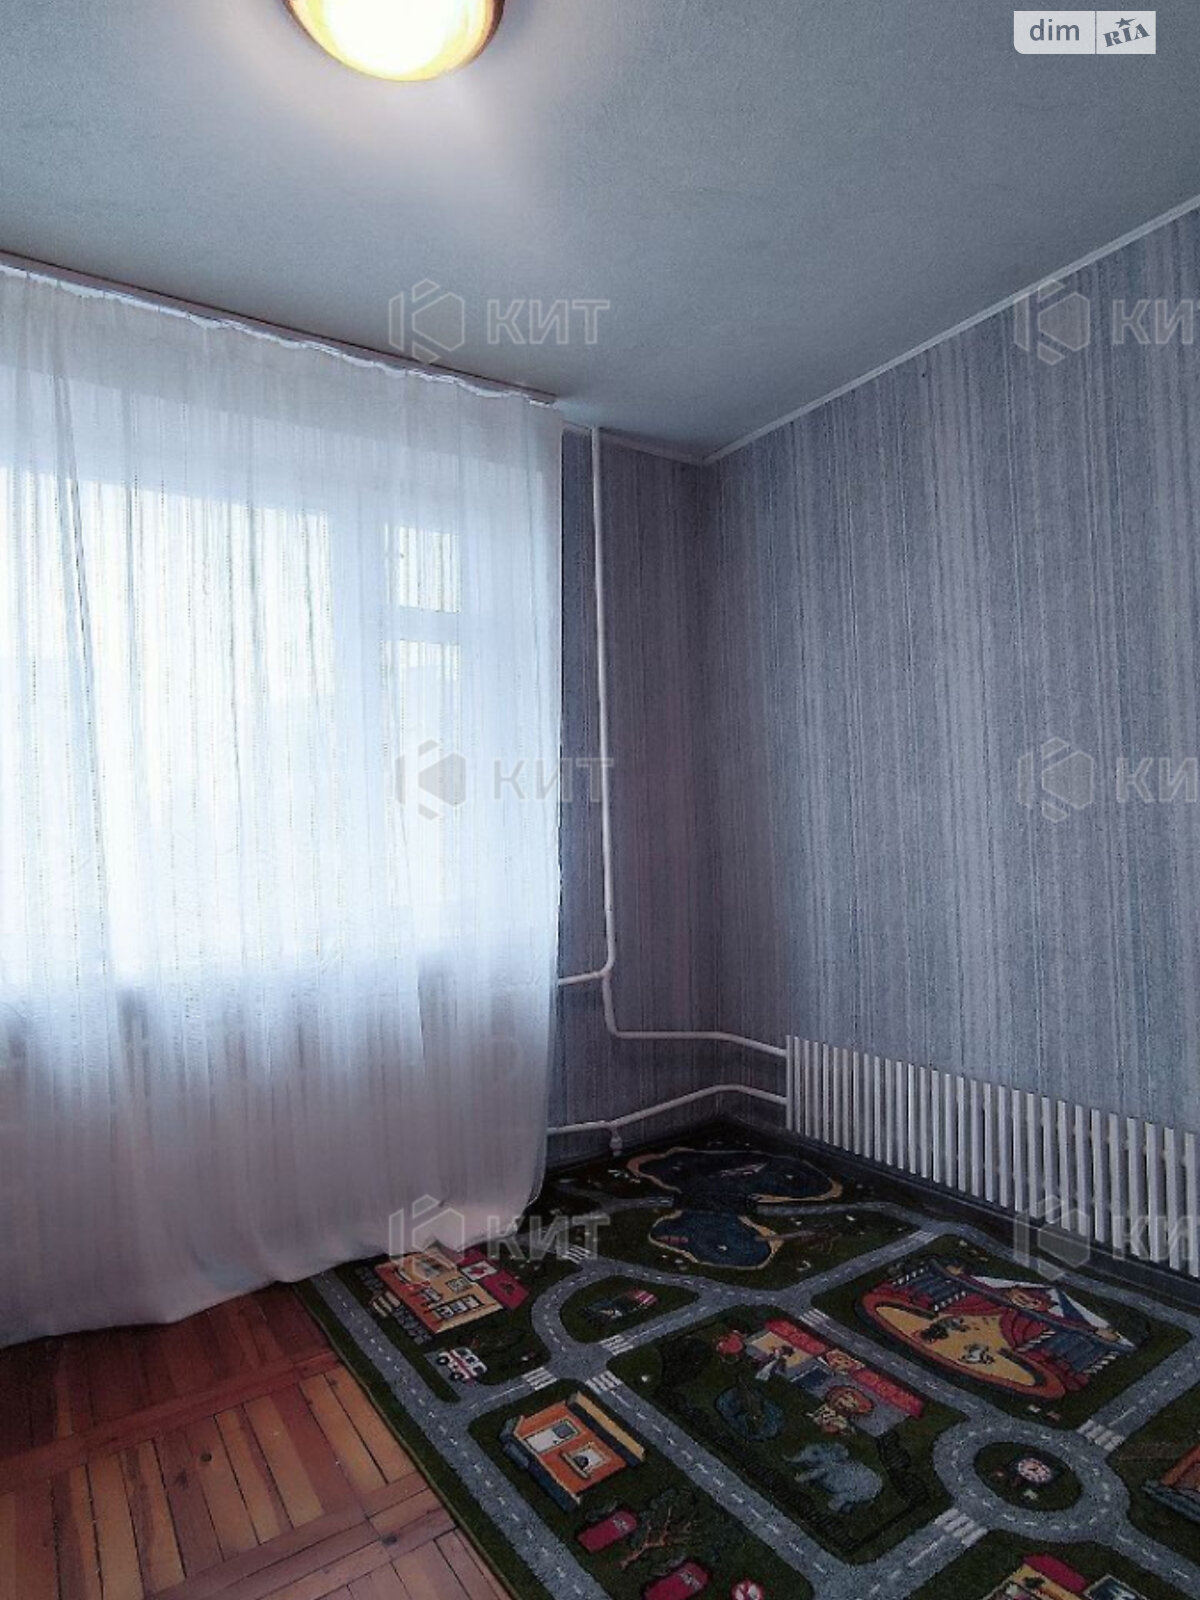 Продажа трехкомнатной квартиры в Харькове, на ул. Старошишковская 11, район Шишковка фото 1